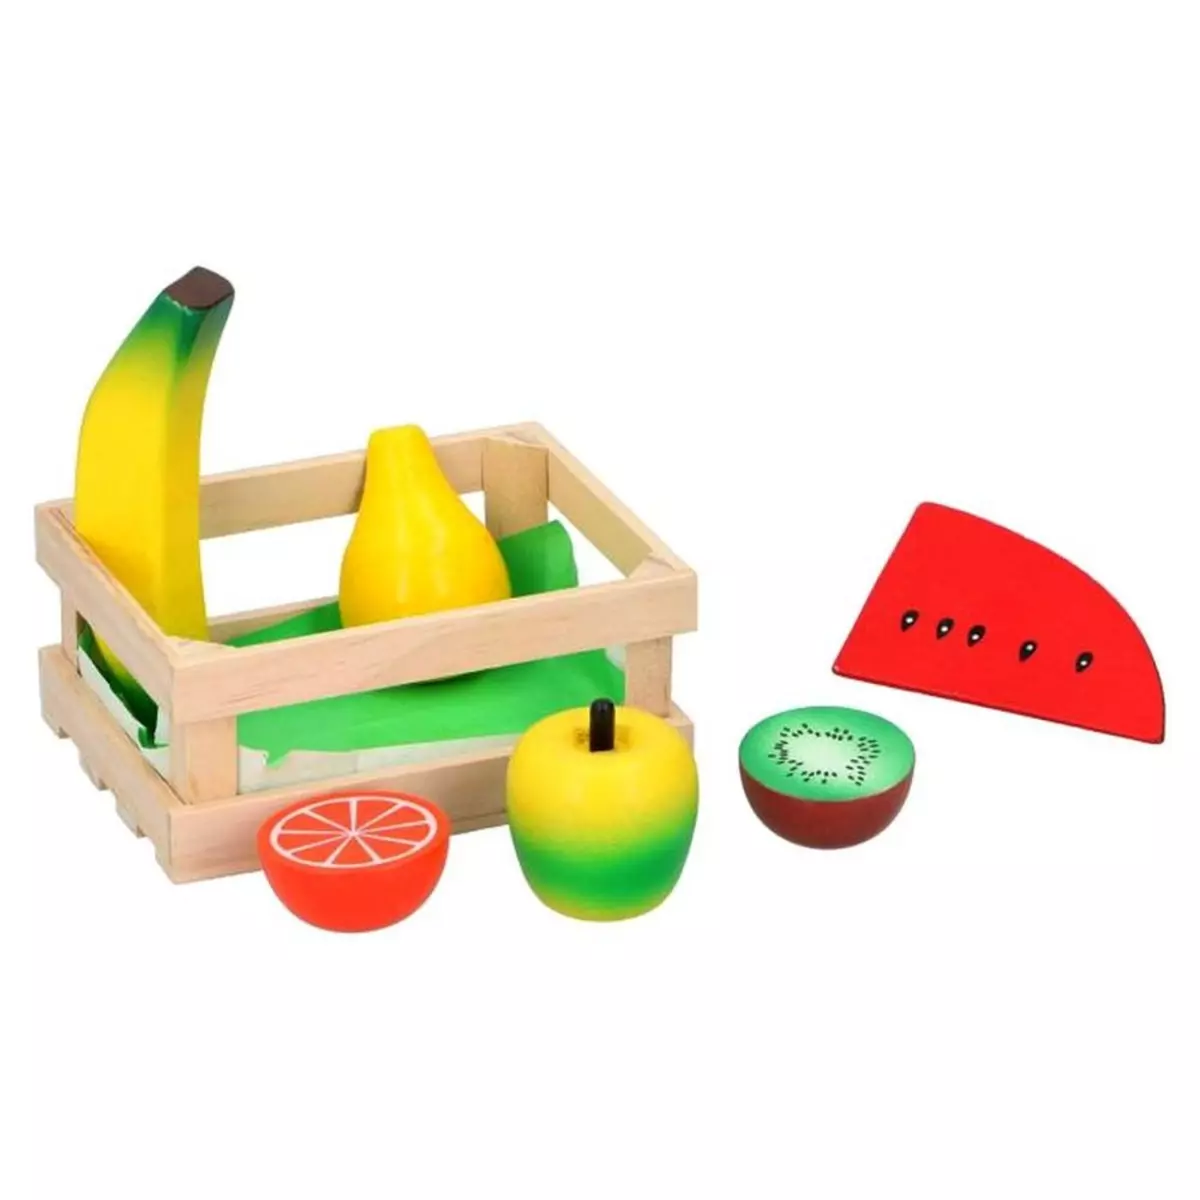  Cagette en bois jouet dinette fruit legume cuisine enfant 3